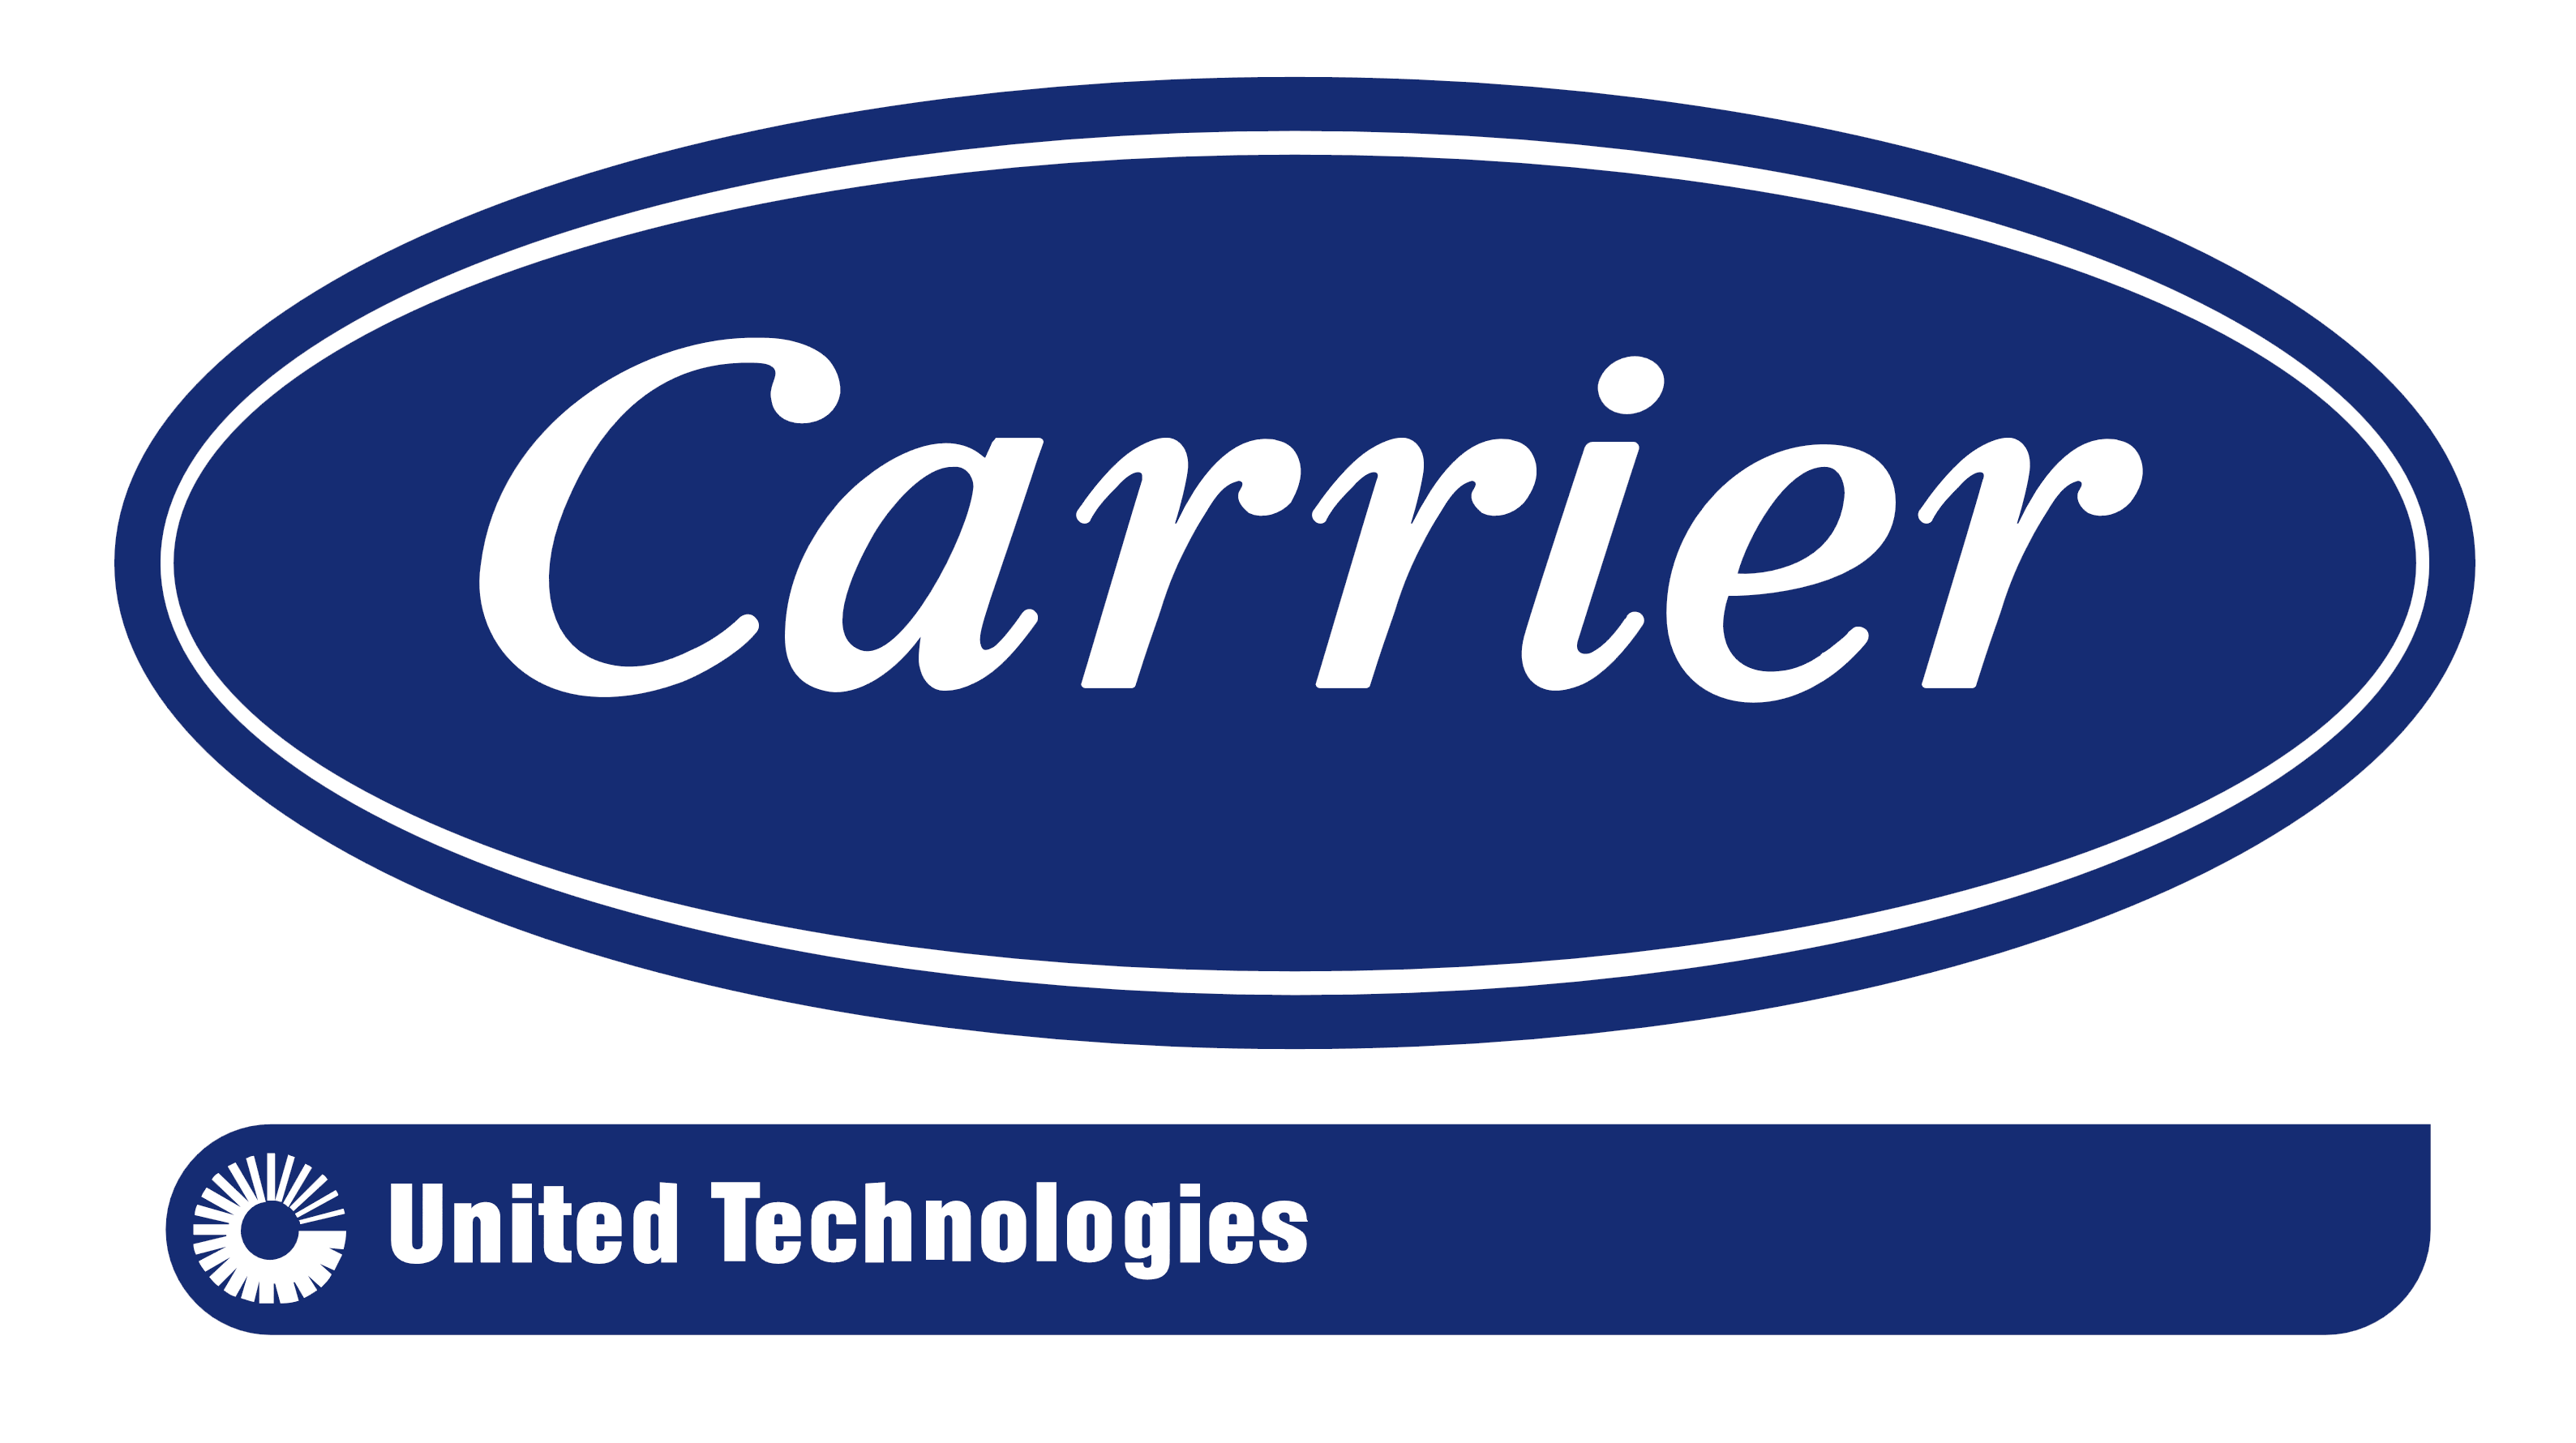 Carrier logo, logotype